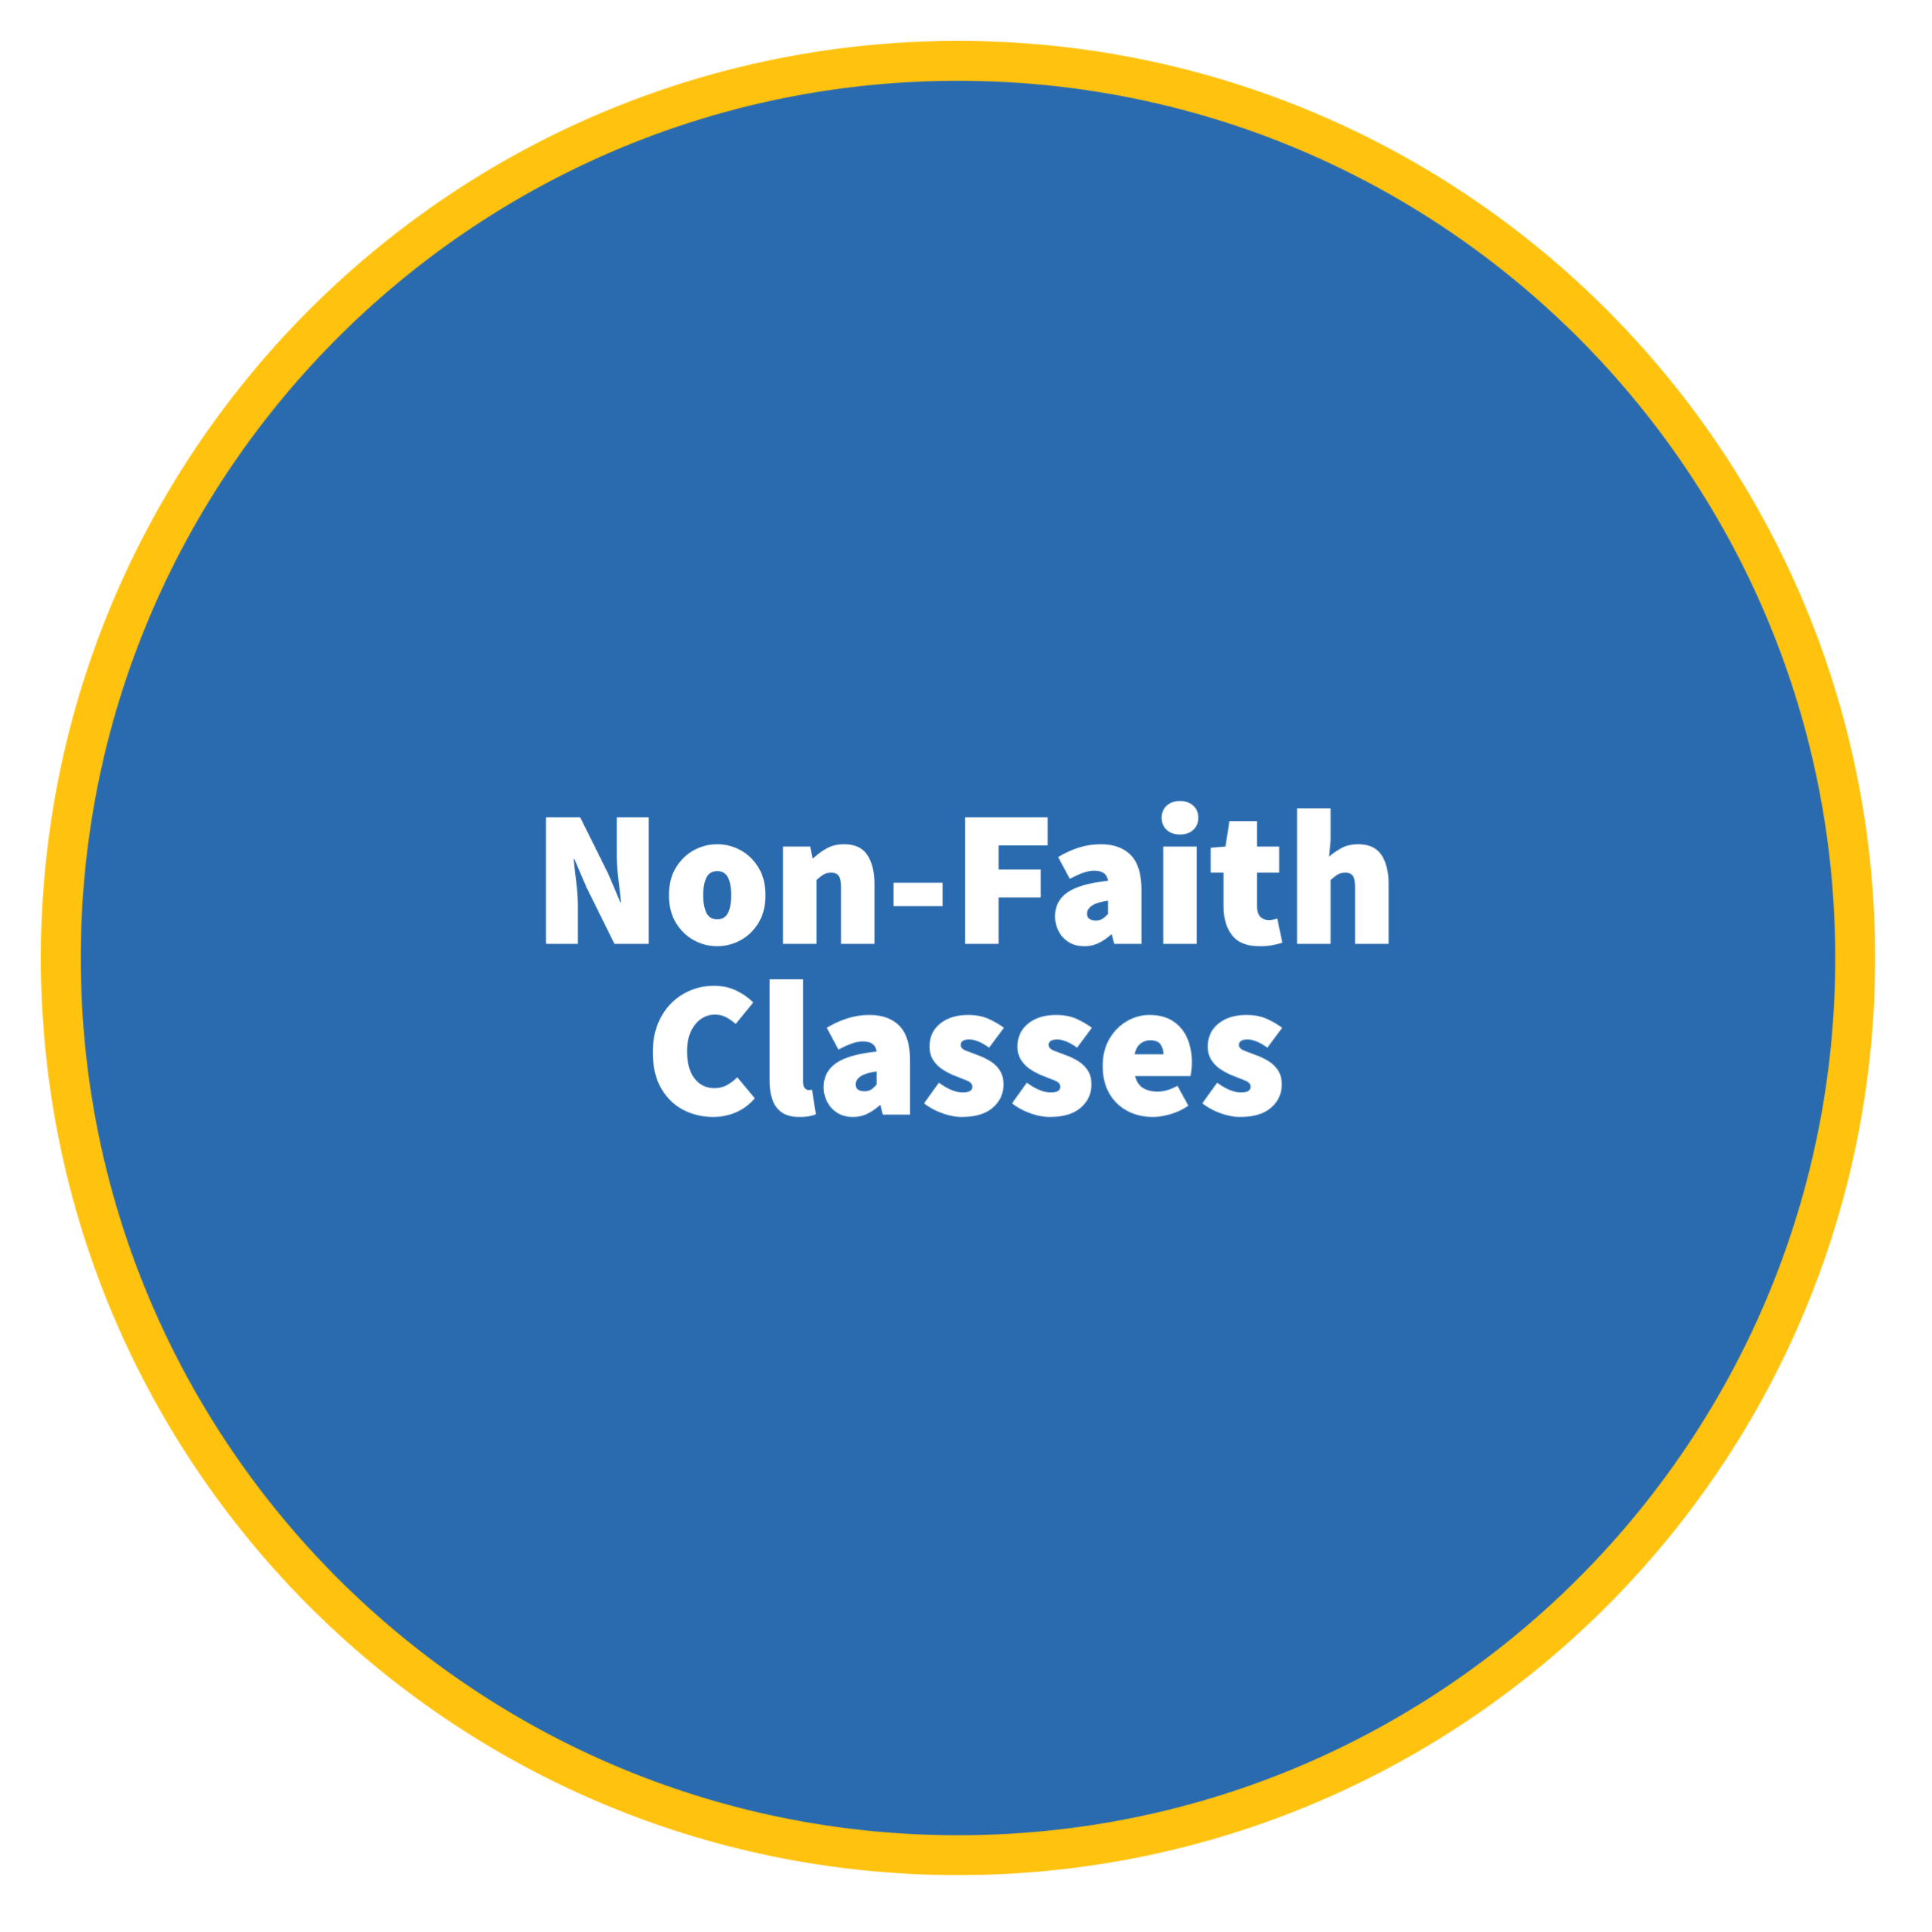 Non-Faith Classes